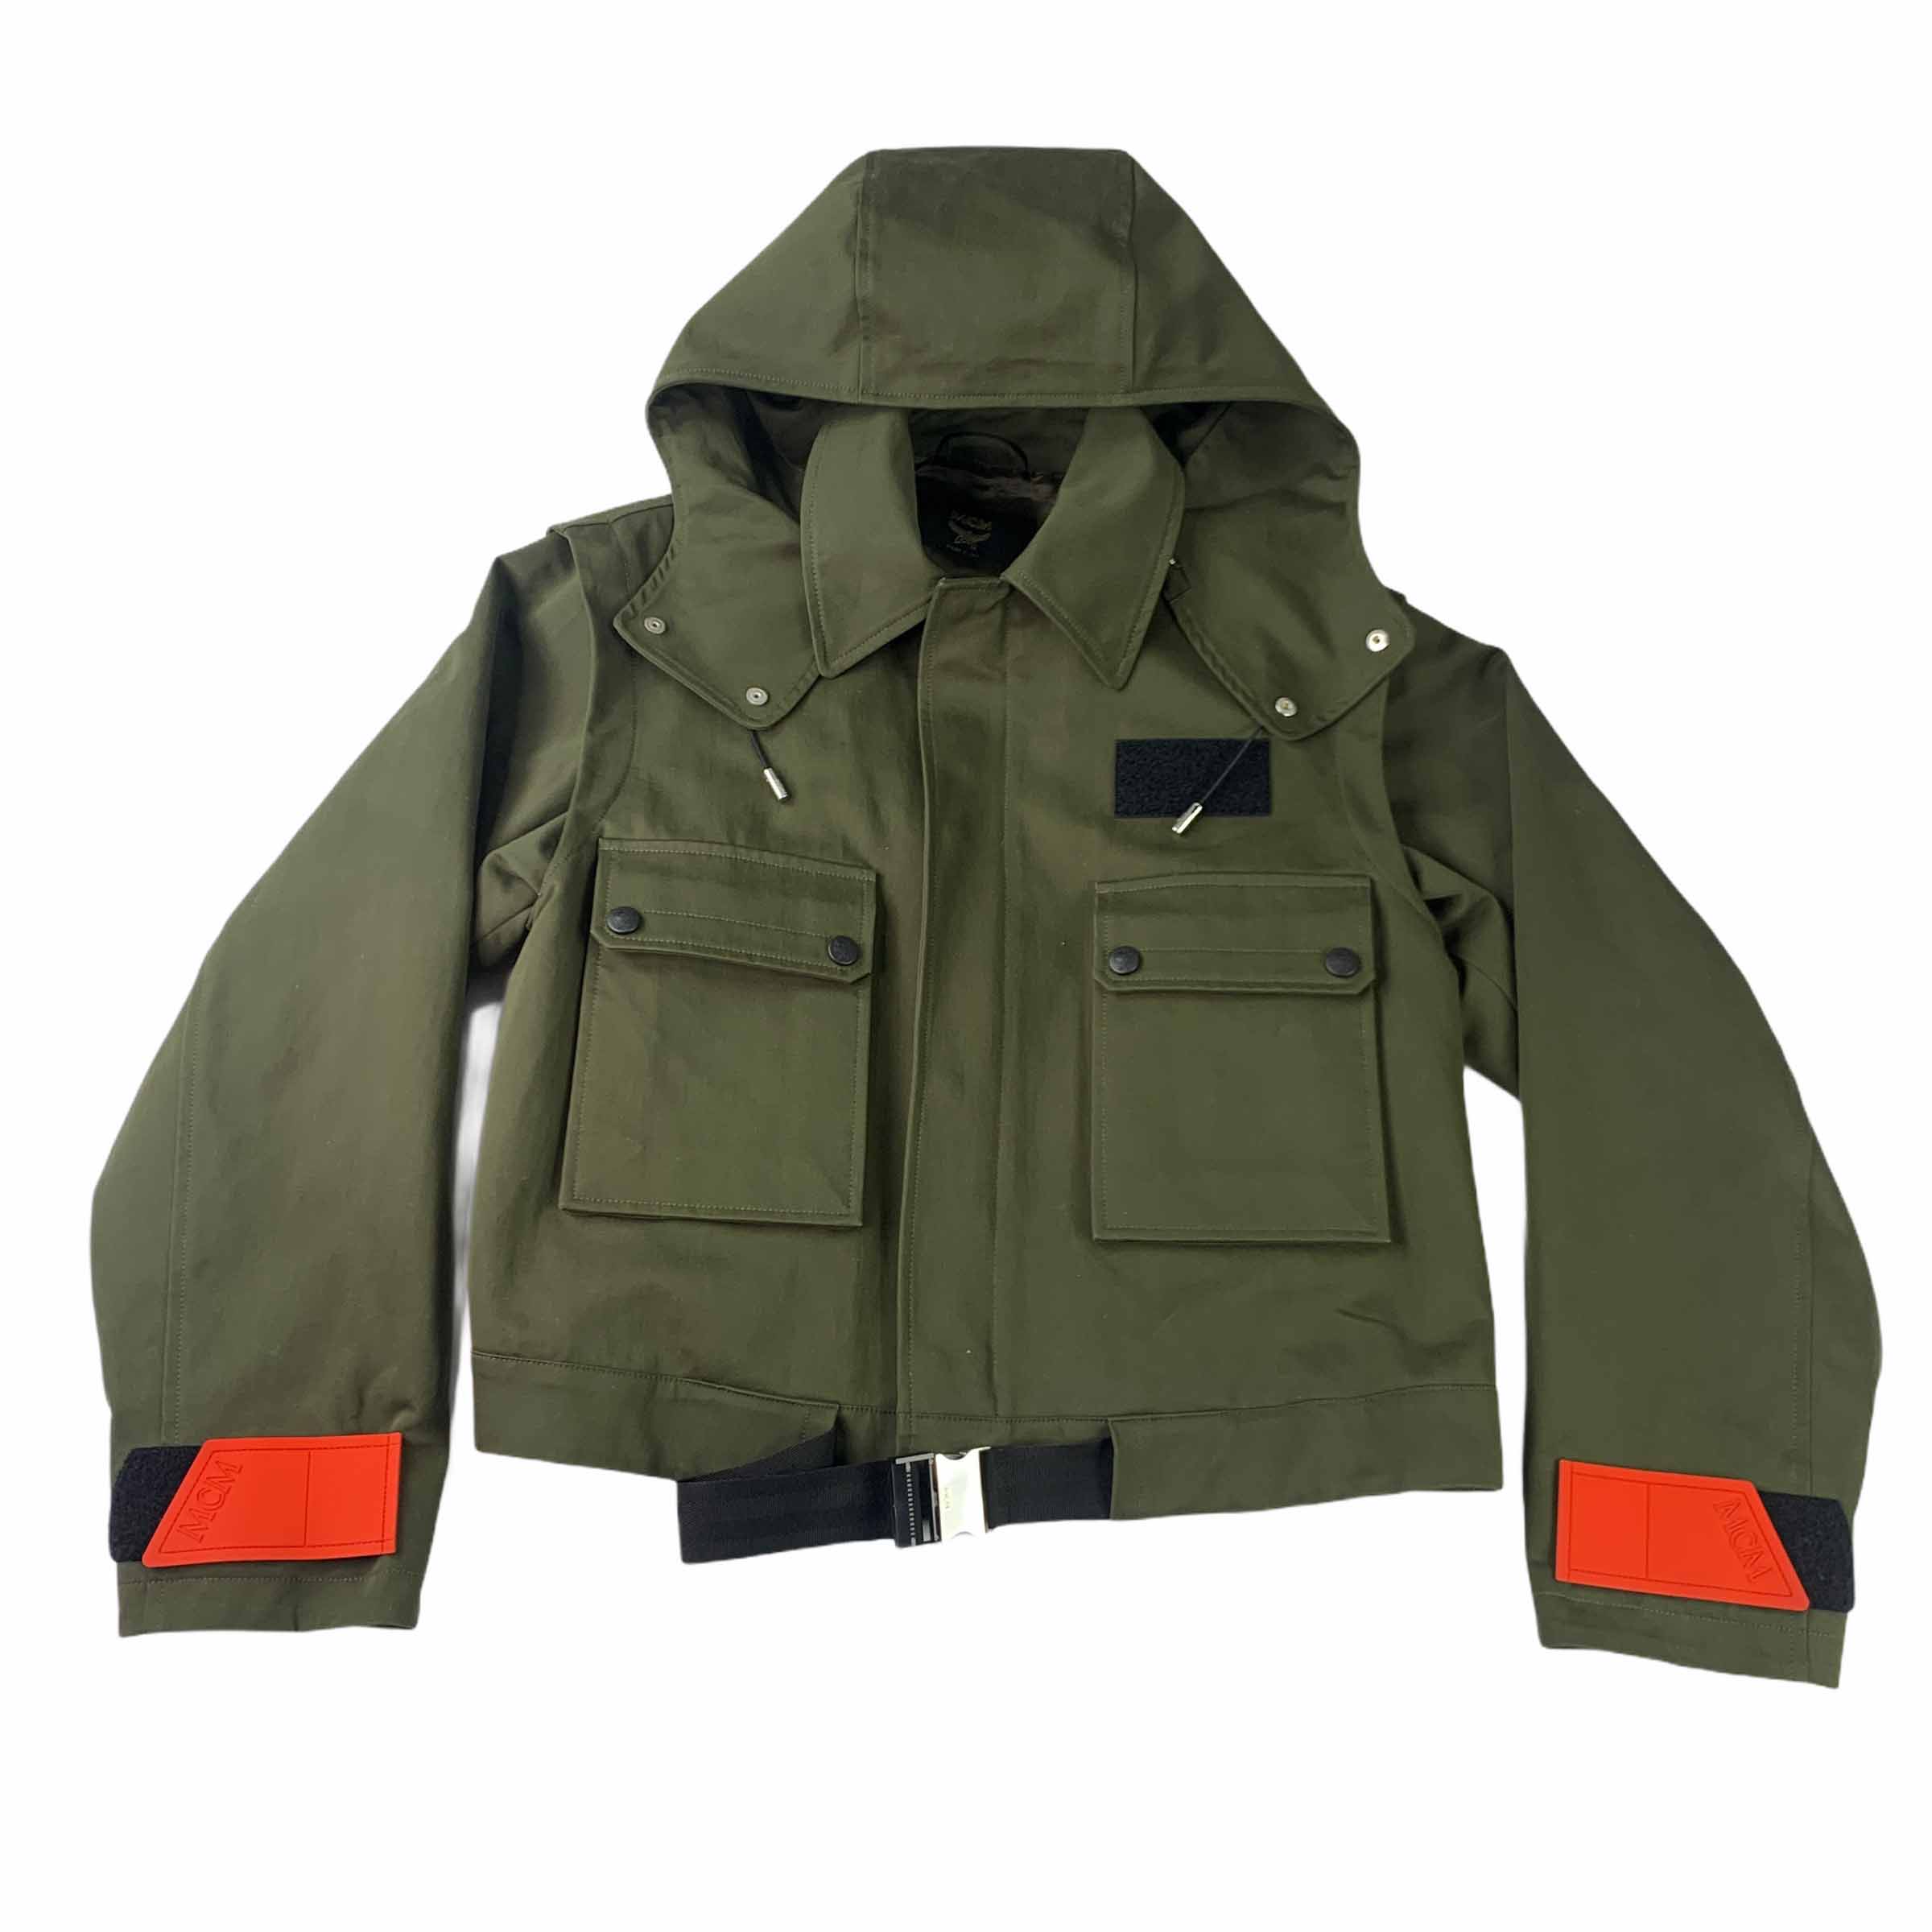 [MCM] Pocket Military Jacket Khaki - Size 38